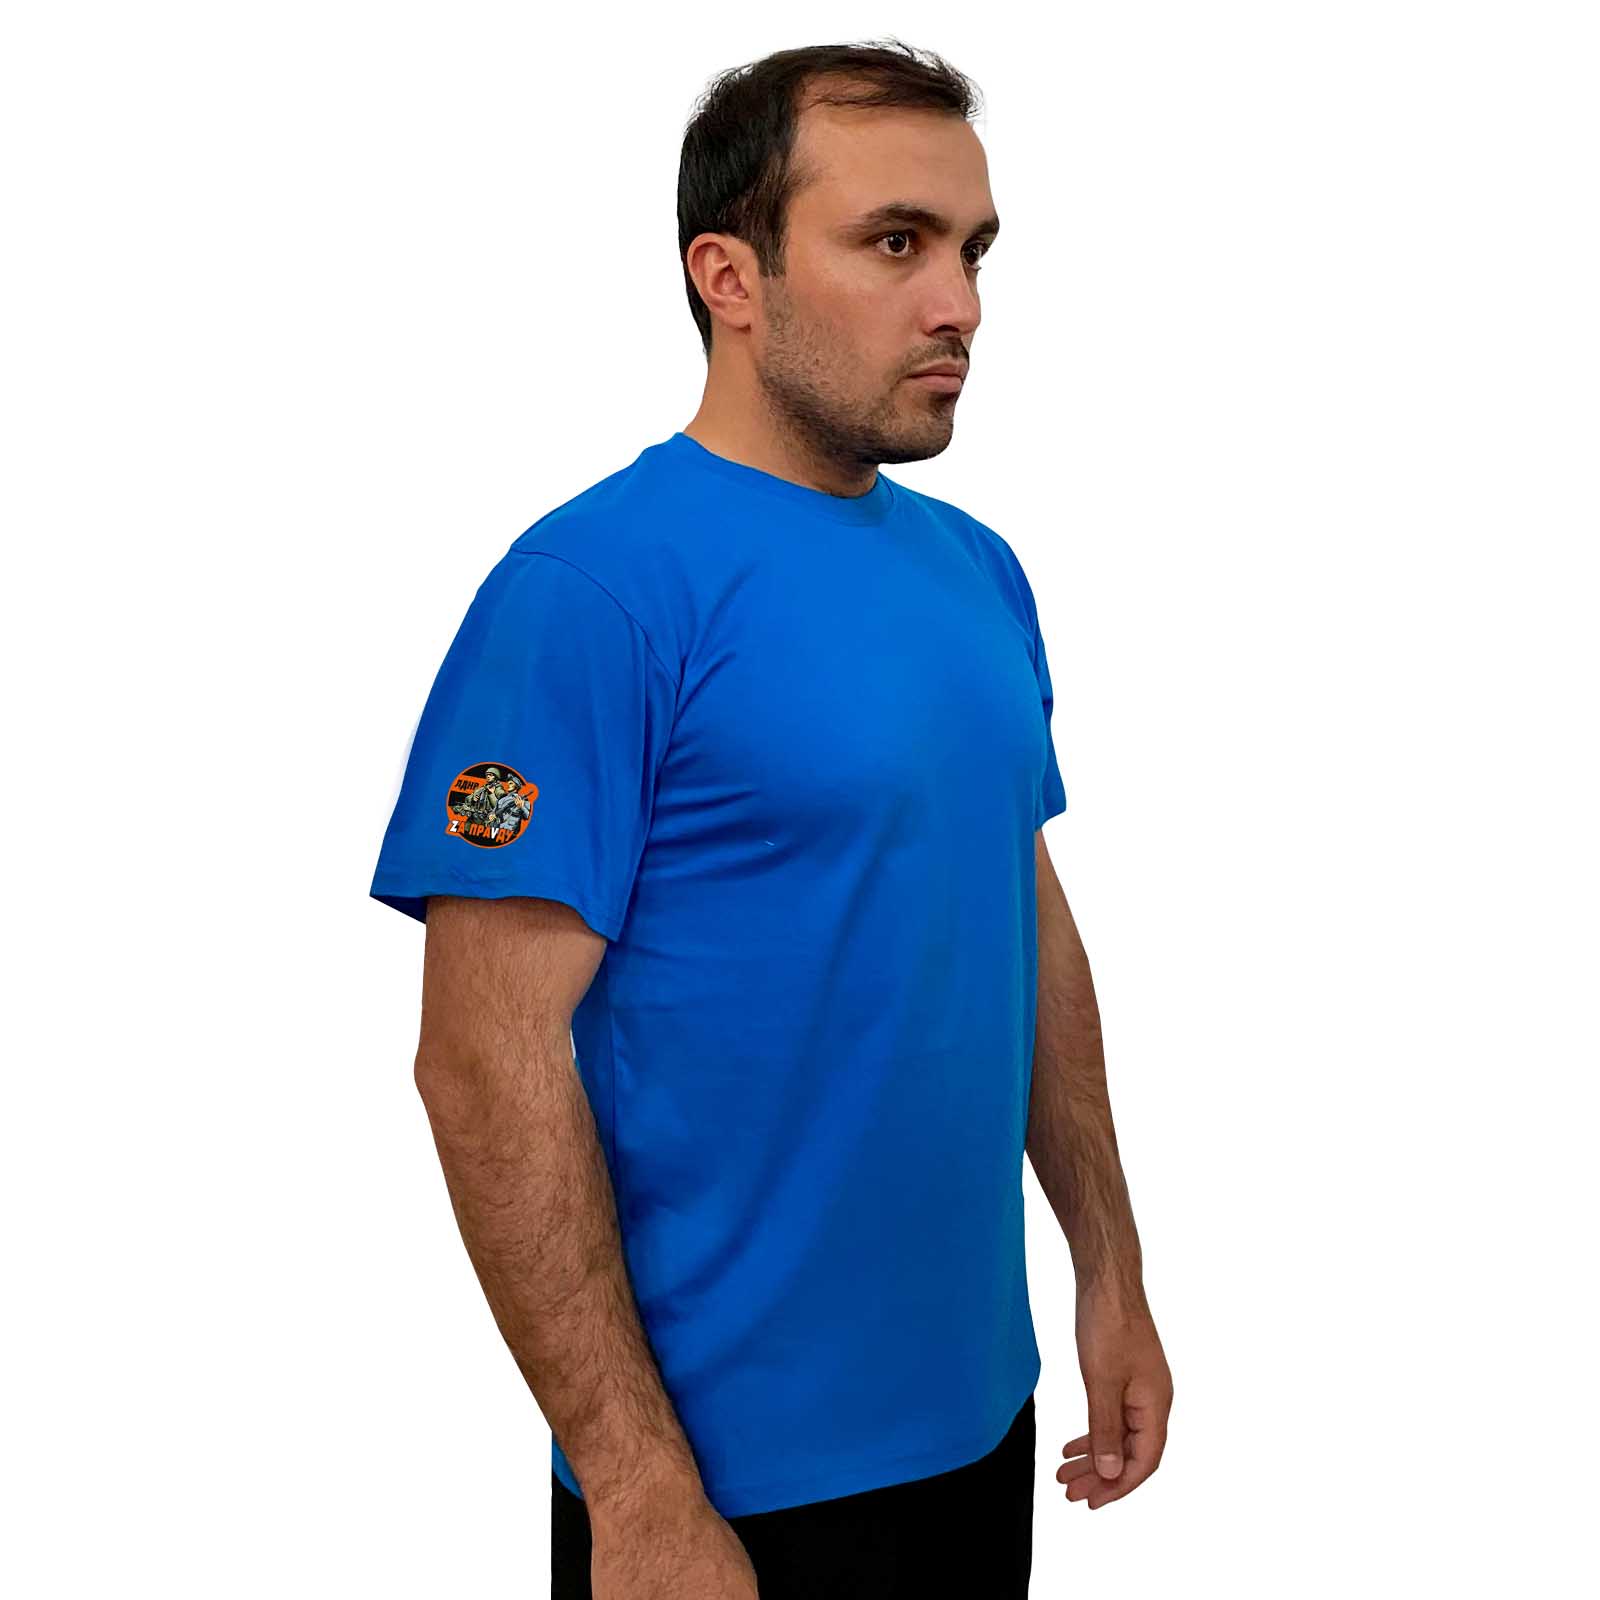 Купить голубую мужскую футболку ЛДНР Zа ПраVду выгодно